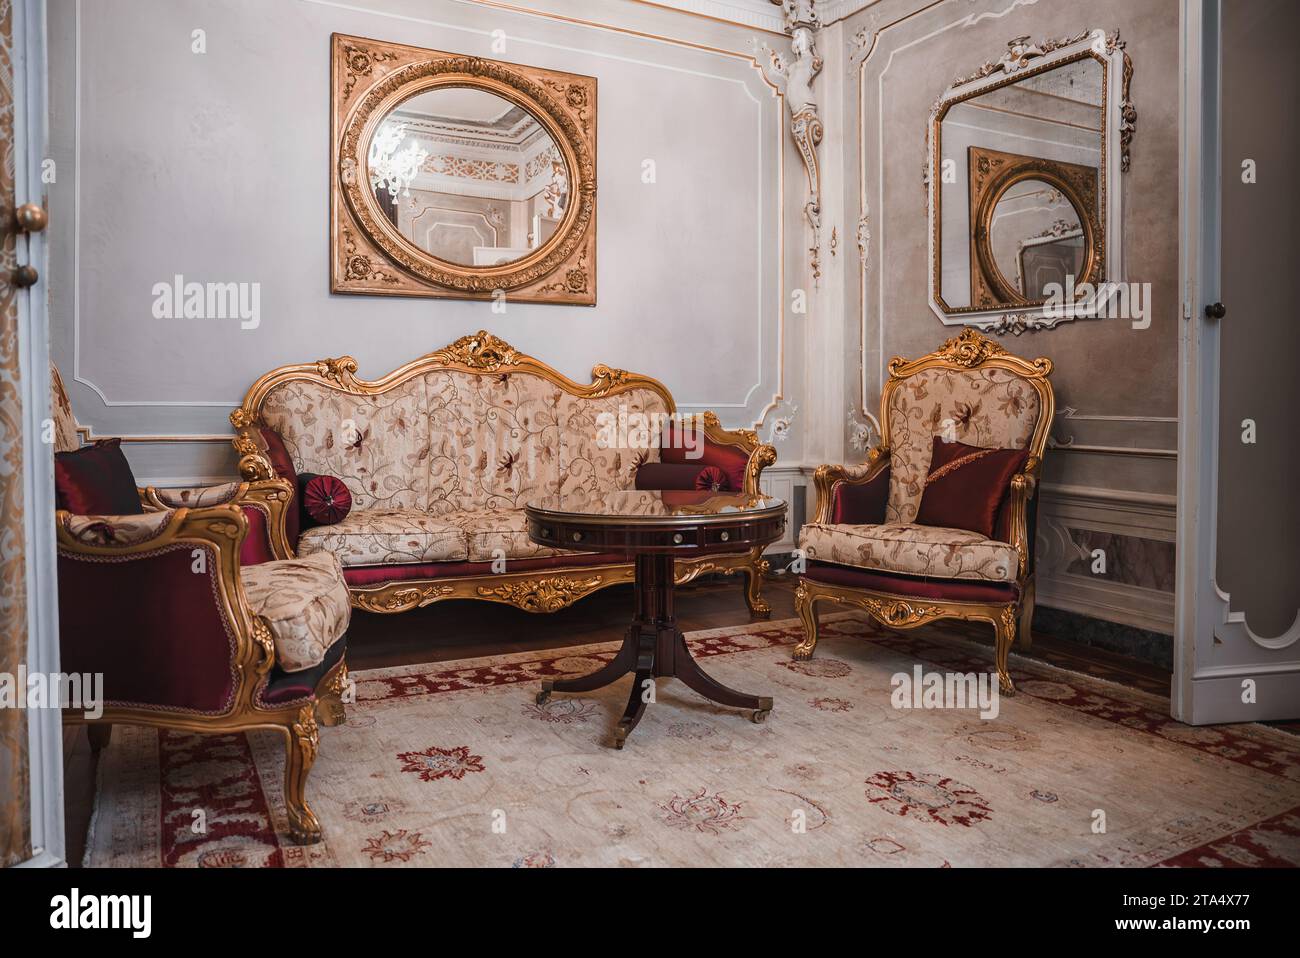 Chambre opulente de style vénitien, mobilier blanc et or orné, éclairage tamisé Banque D'Images